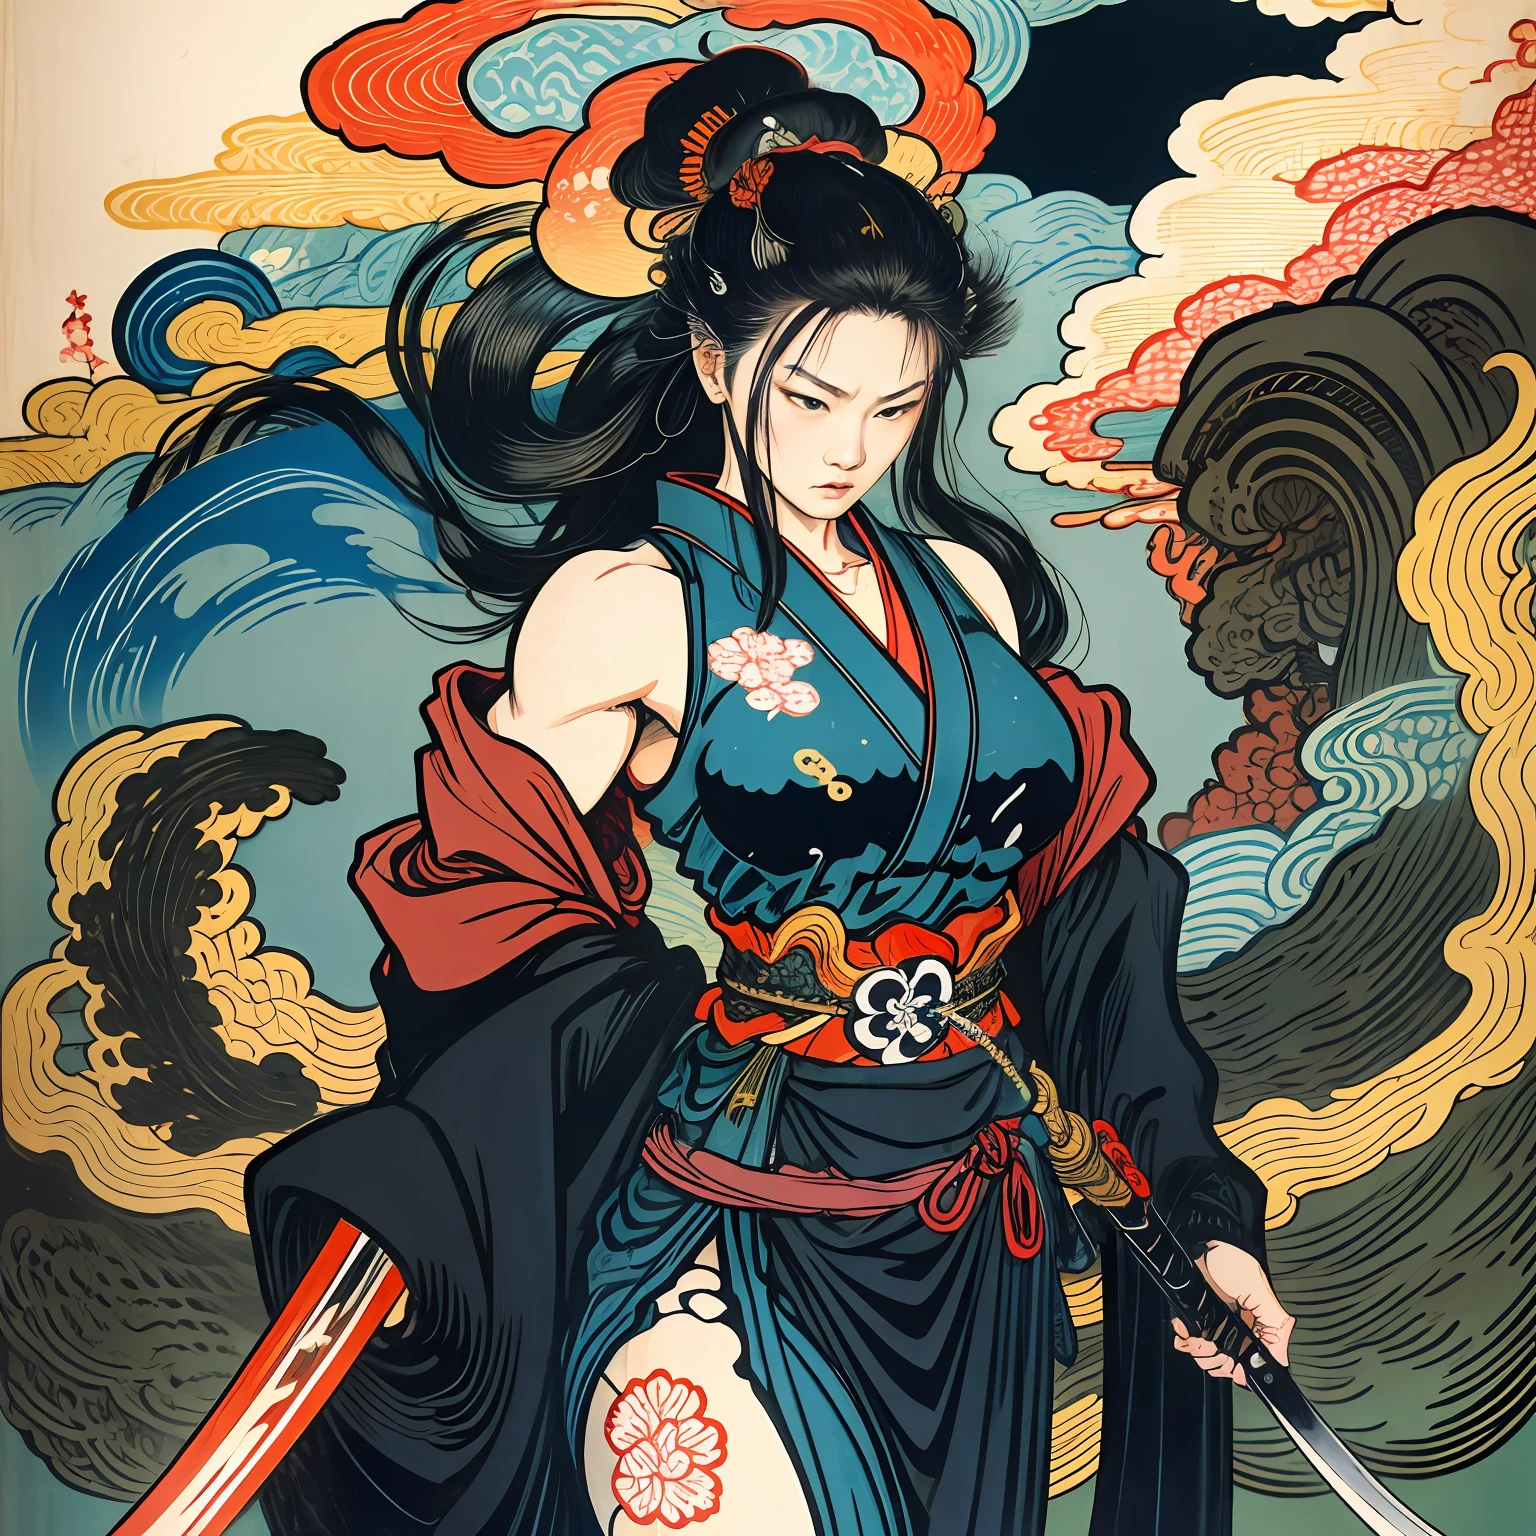 Il s&#39;agit d&#39;une peinture corporelle complète aux couleurs naturelles avec des dessins au trait de style Katsushika Hokusai.. L&#39;épéiste est maigre et musclée. Samouraï féminin du Japon. Avec une expression de détermination digne mais féminine, elle affronte les mauvais esprits. Elle a de longs cheveux noirs. Le haut de son corps est recouvert d&#39;un kimono noir et son hakama arrive jusqu&#39;aux genoux.. Dans sa main droite, elle tient une épée japonaise avec une partie plus longue.. Dans la plus haute qualité, chef-d&#39;œuvre haute résolution de style ukiyo-e, éclairs et flammes tourbillonnantes. Parmi eux, la guerrière samouraï est debout, le dos droit, face à l&#39;avant.